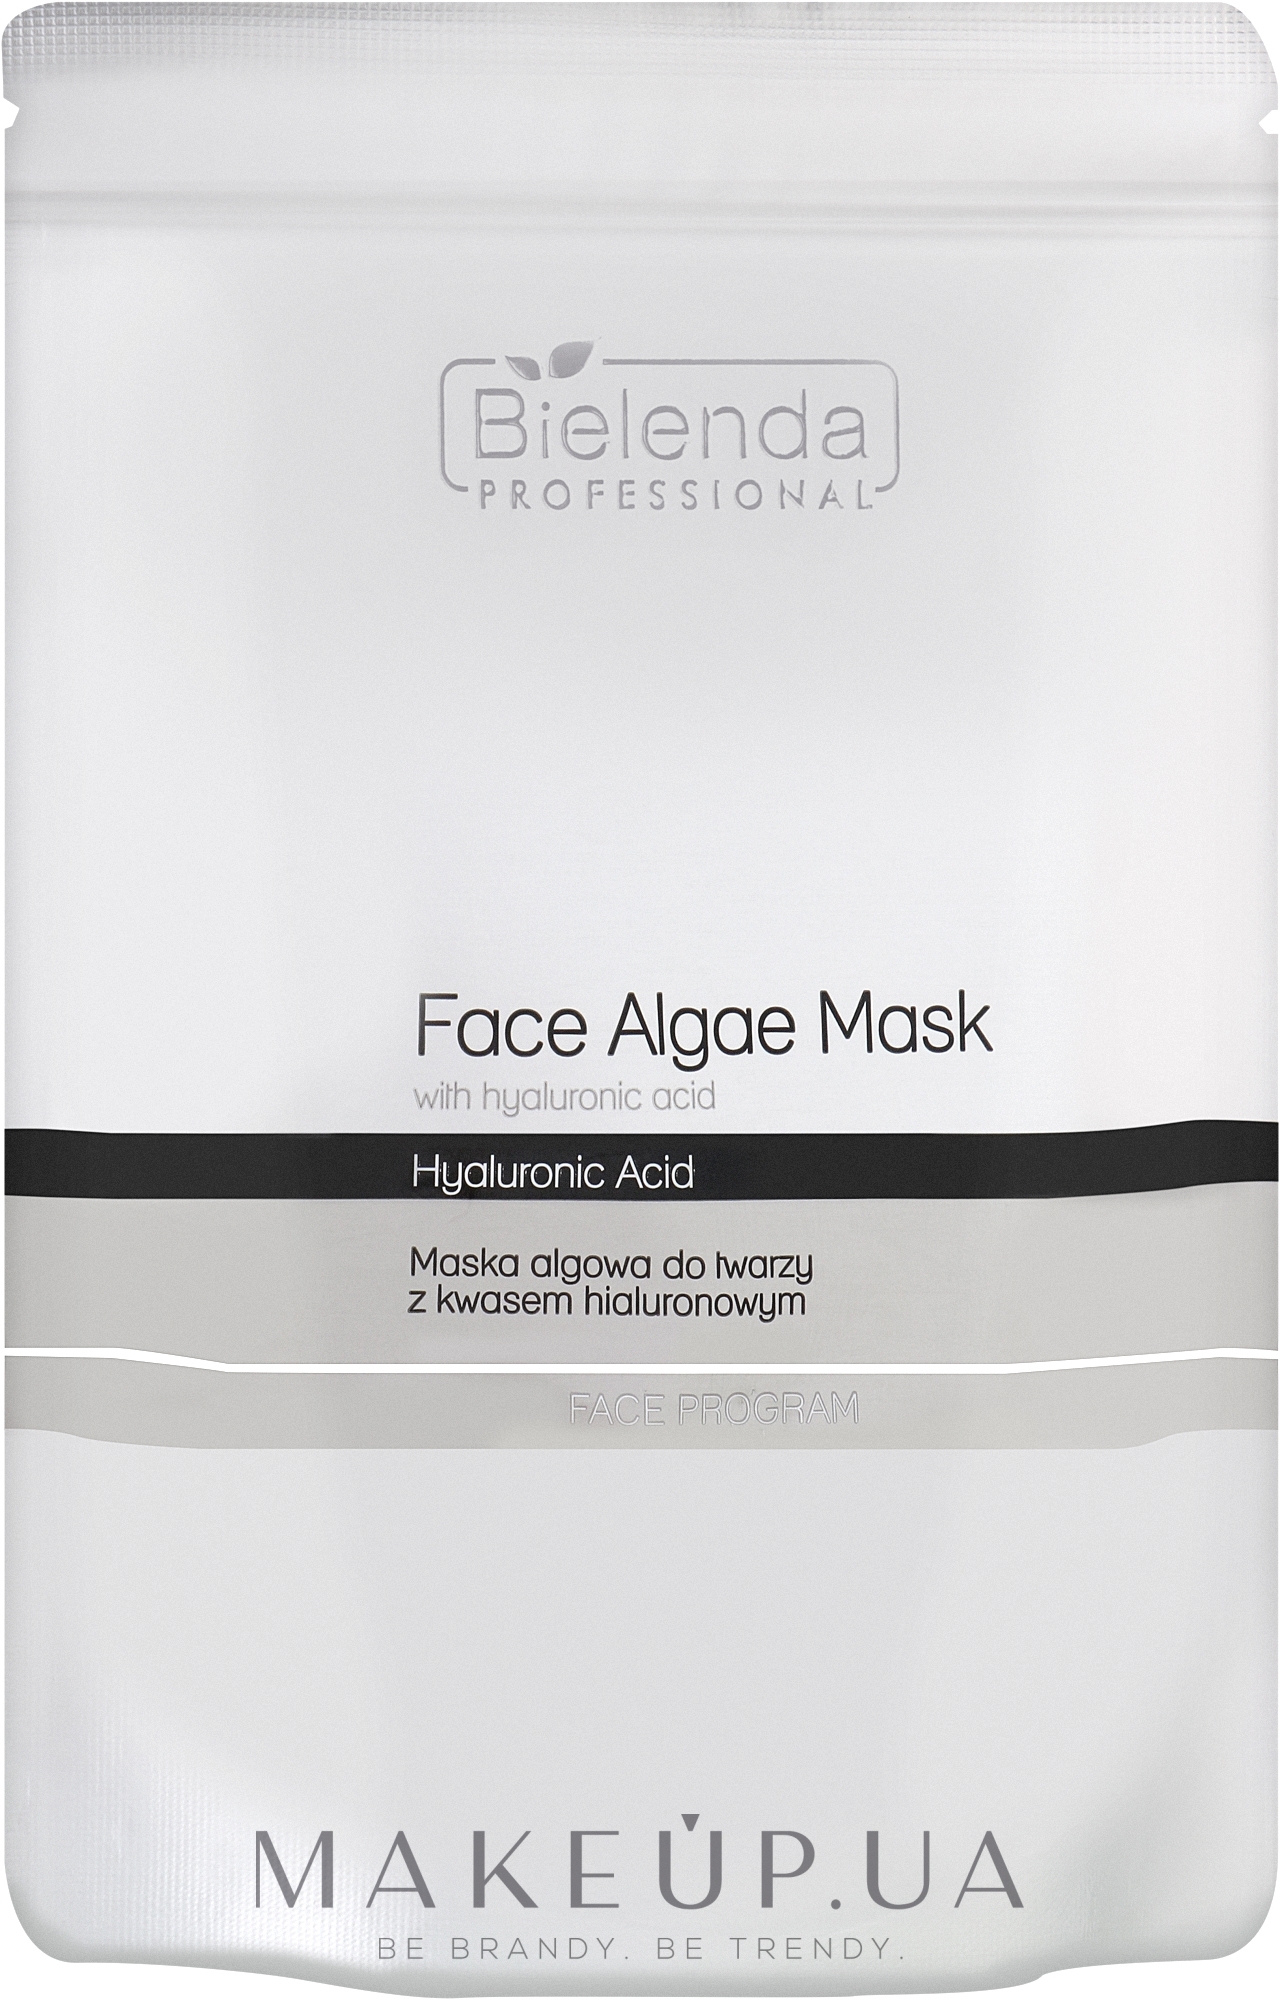 Альгинатная маска для лица с гиалуроновой кислотой - Bielenda Professional Face Algae Mask with Hyaluronic Acid (запасной блок) — фото 190g